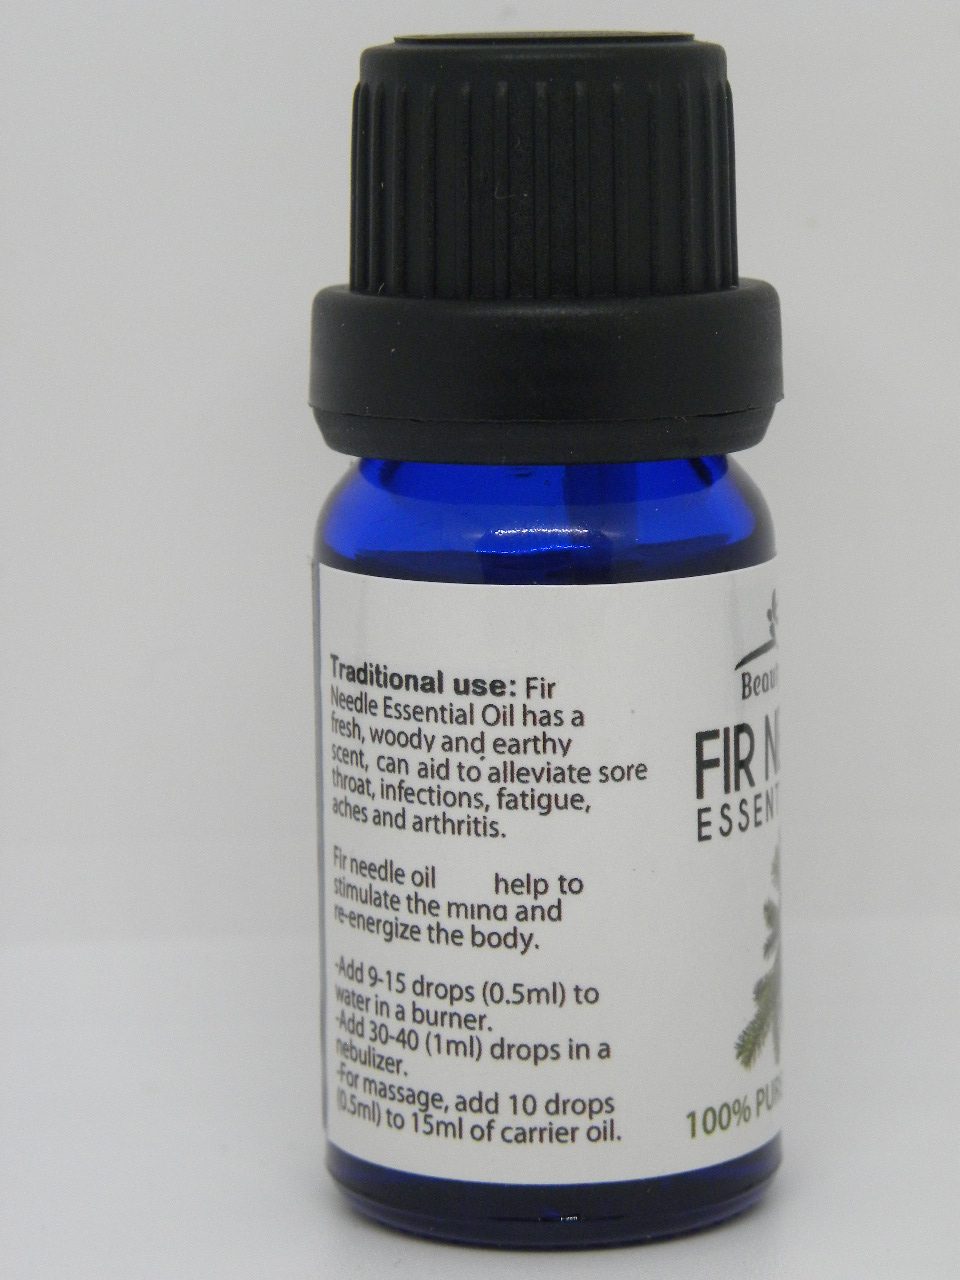 fir needle oil